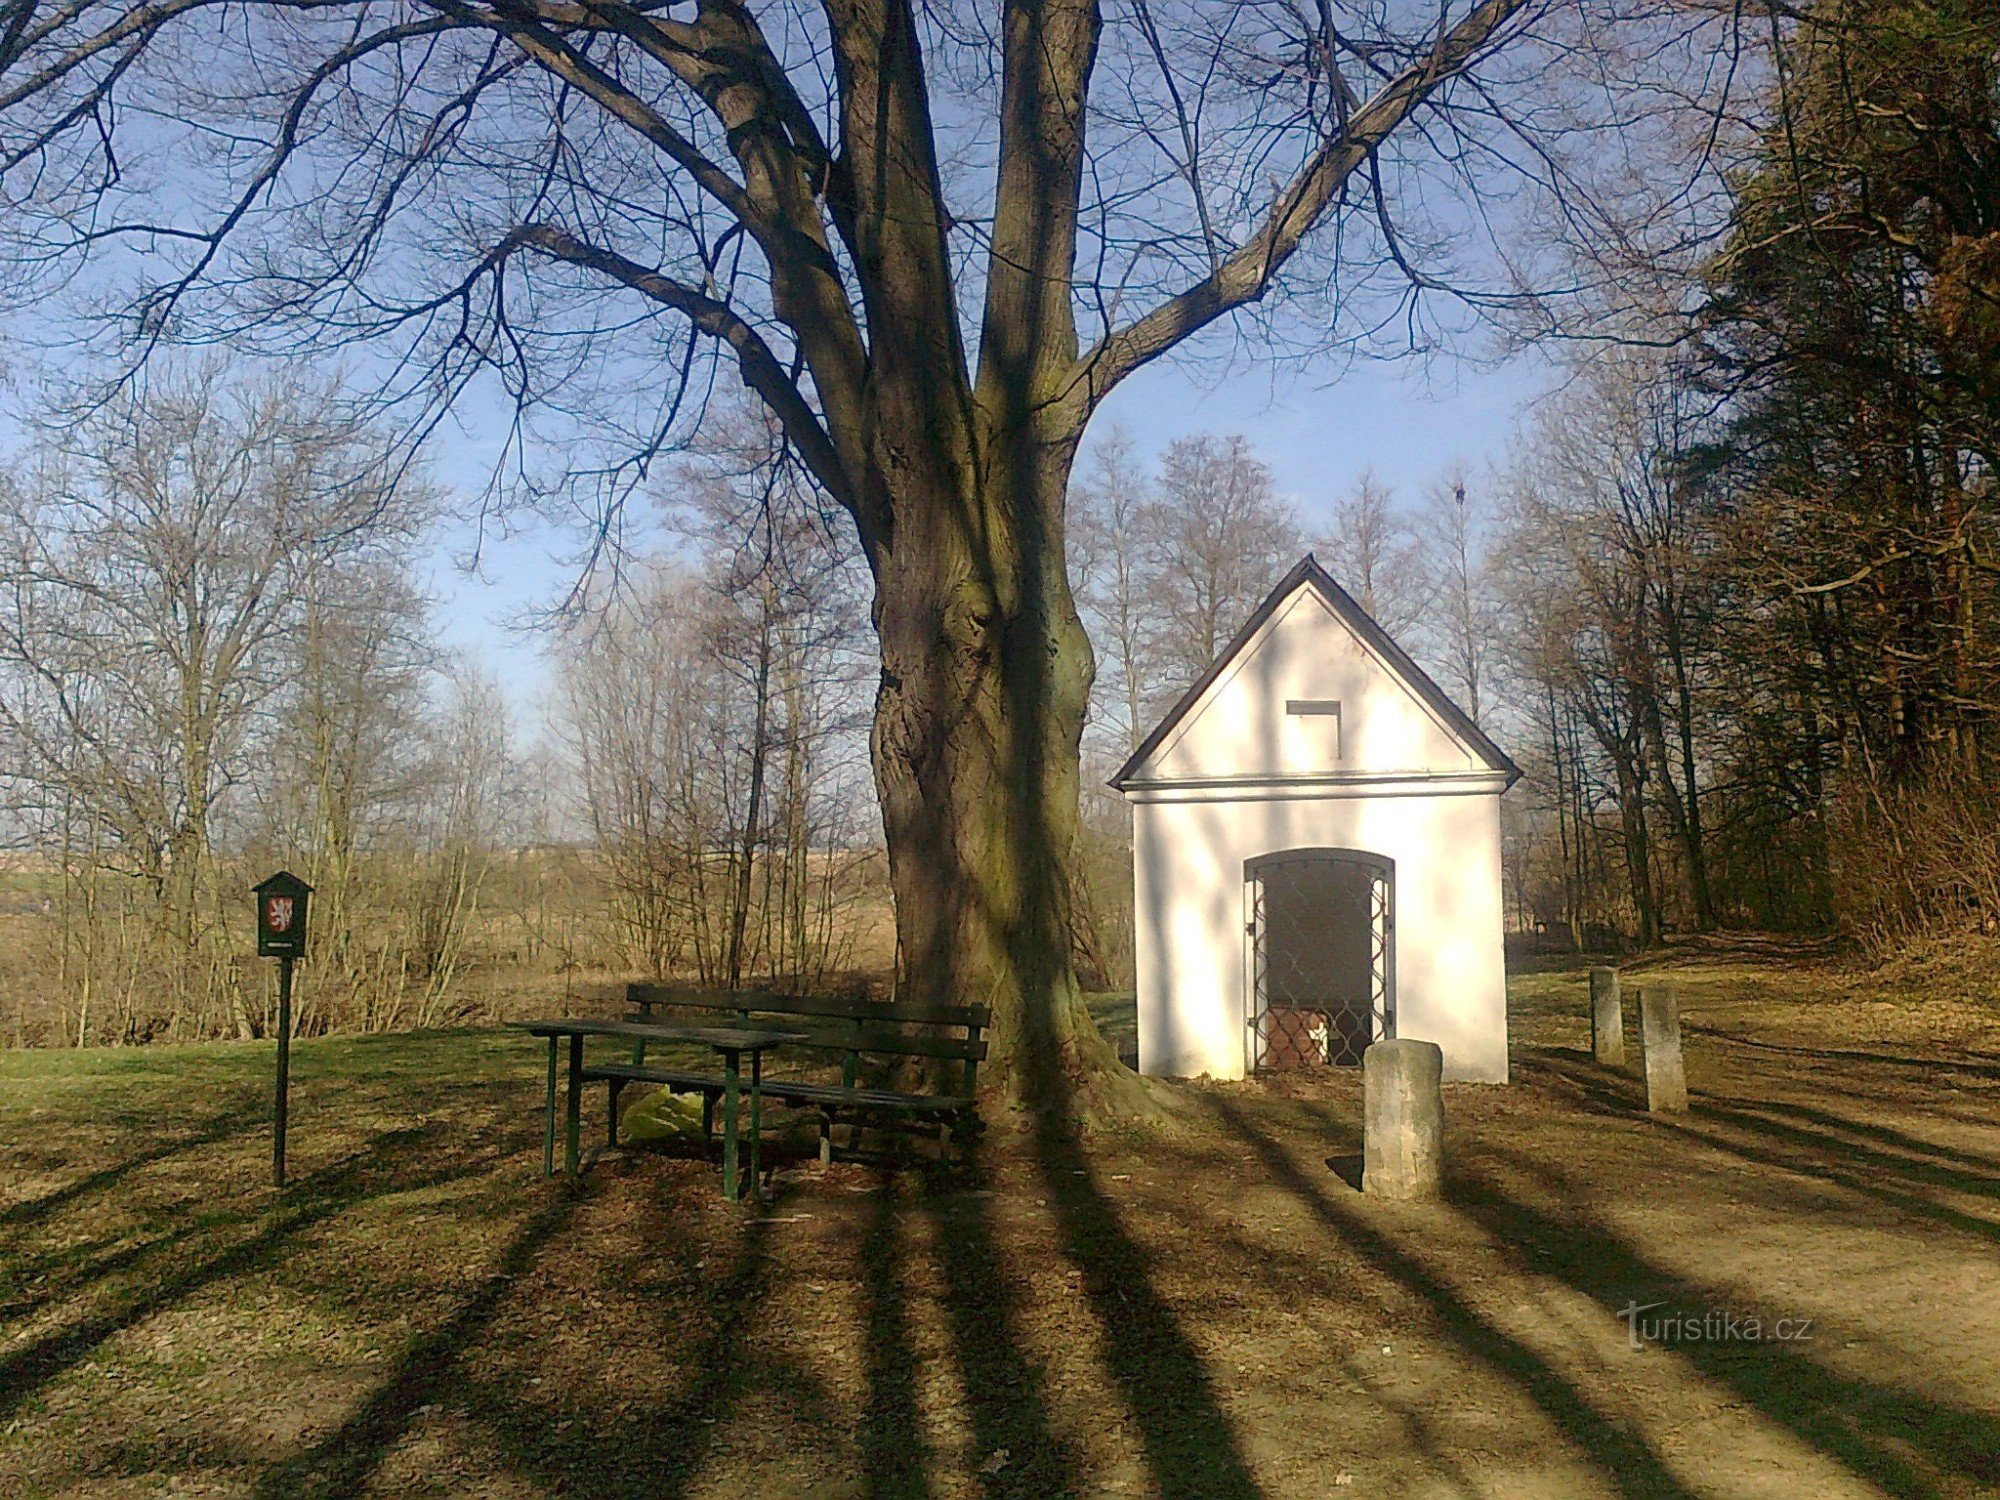 Chapelle avec un tilleul commémoratif (marquage à l'extrême gauche de la photo)